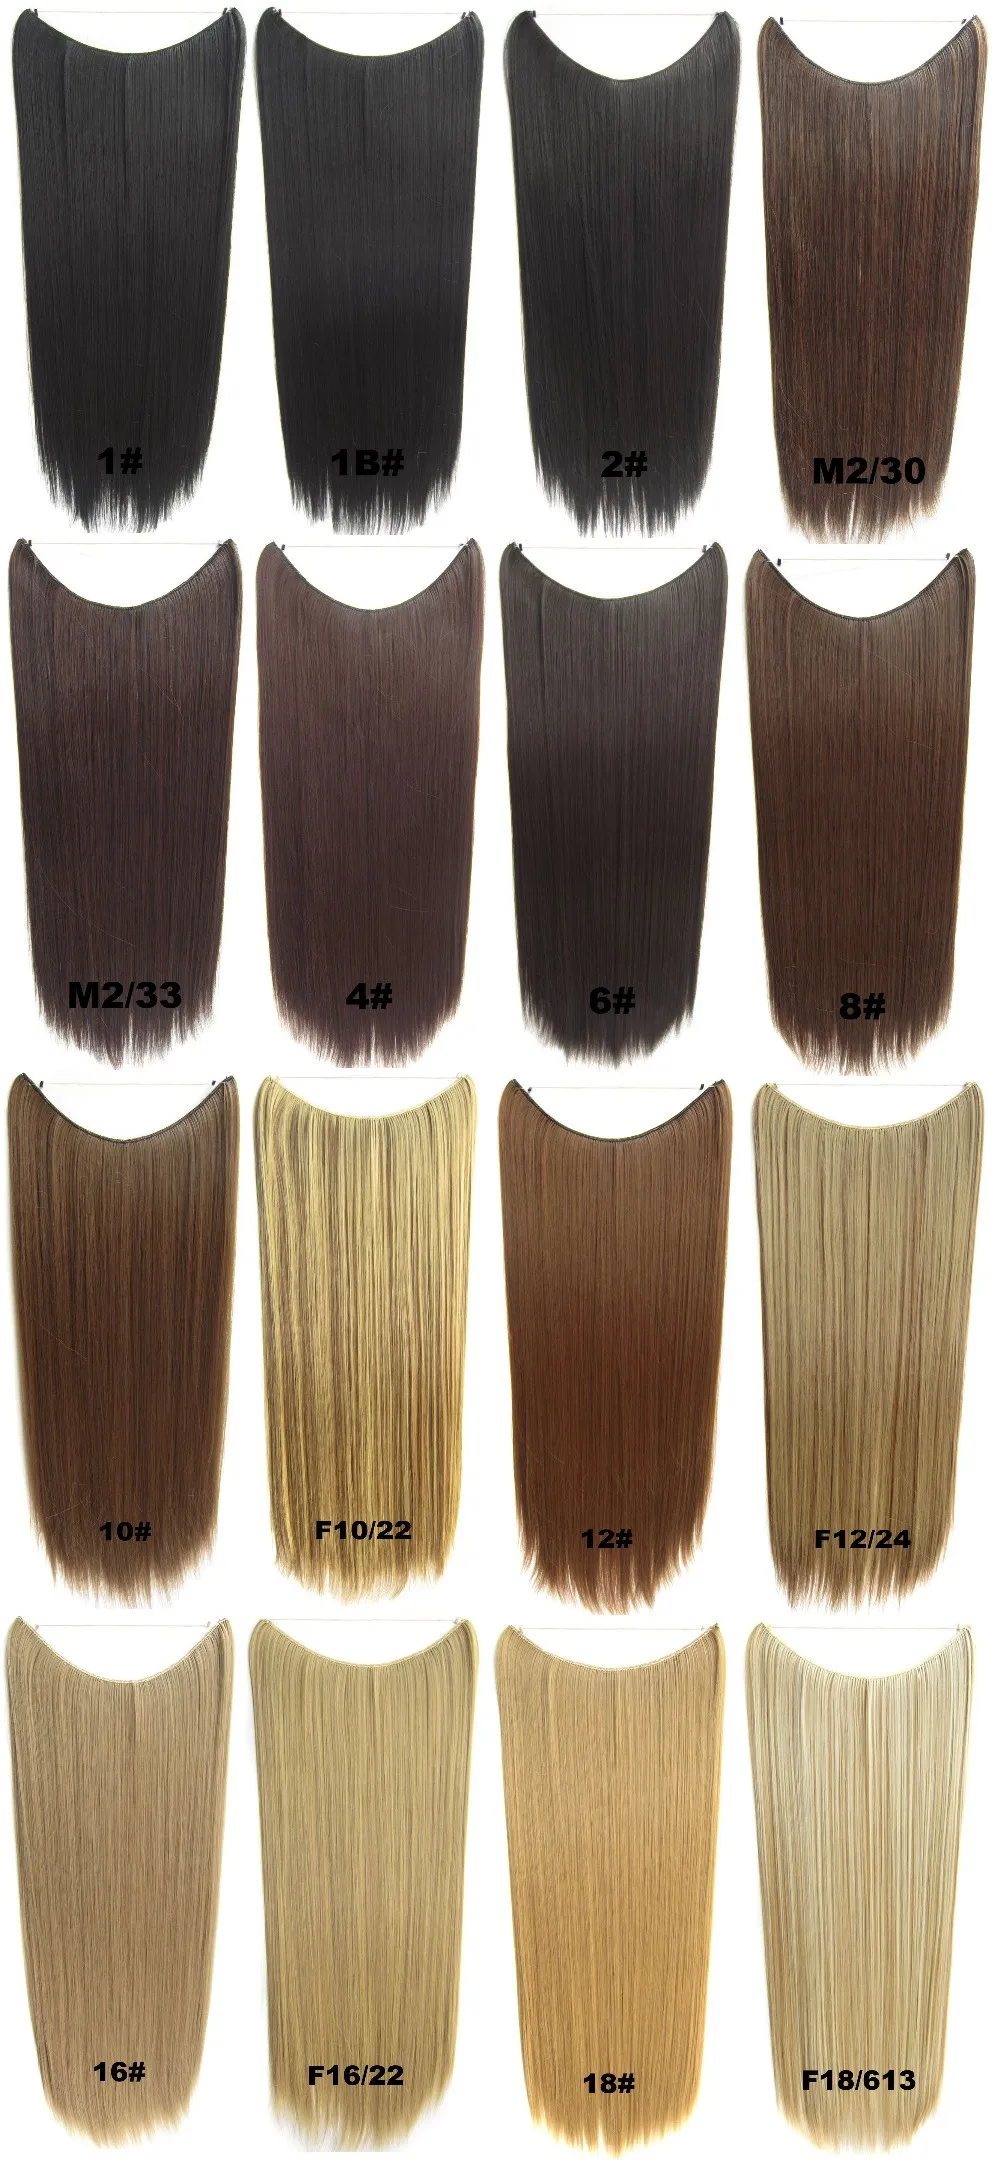 Grilshow длинные 2" Флип в синтетических волос завод волнистых волос расширение FIH-888 32 Цвета, 100 г, 5 шт./партия